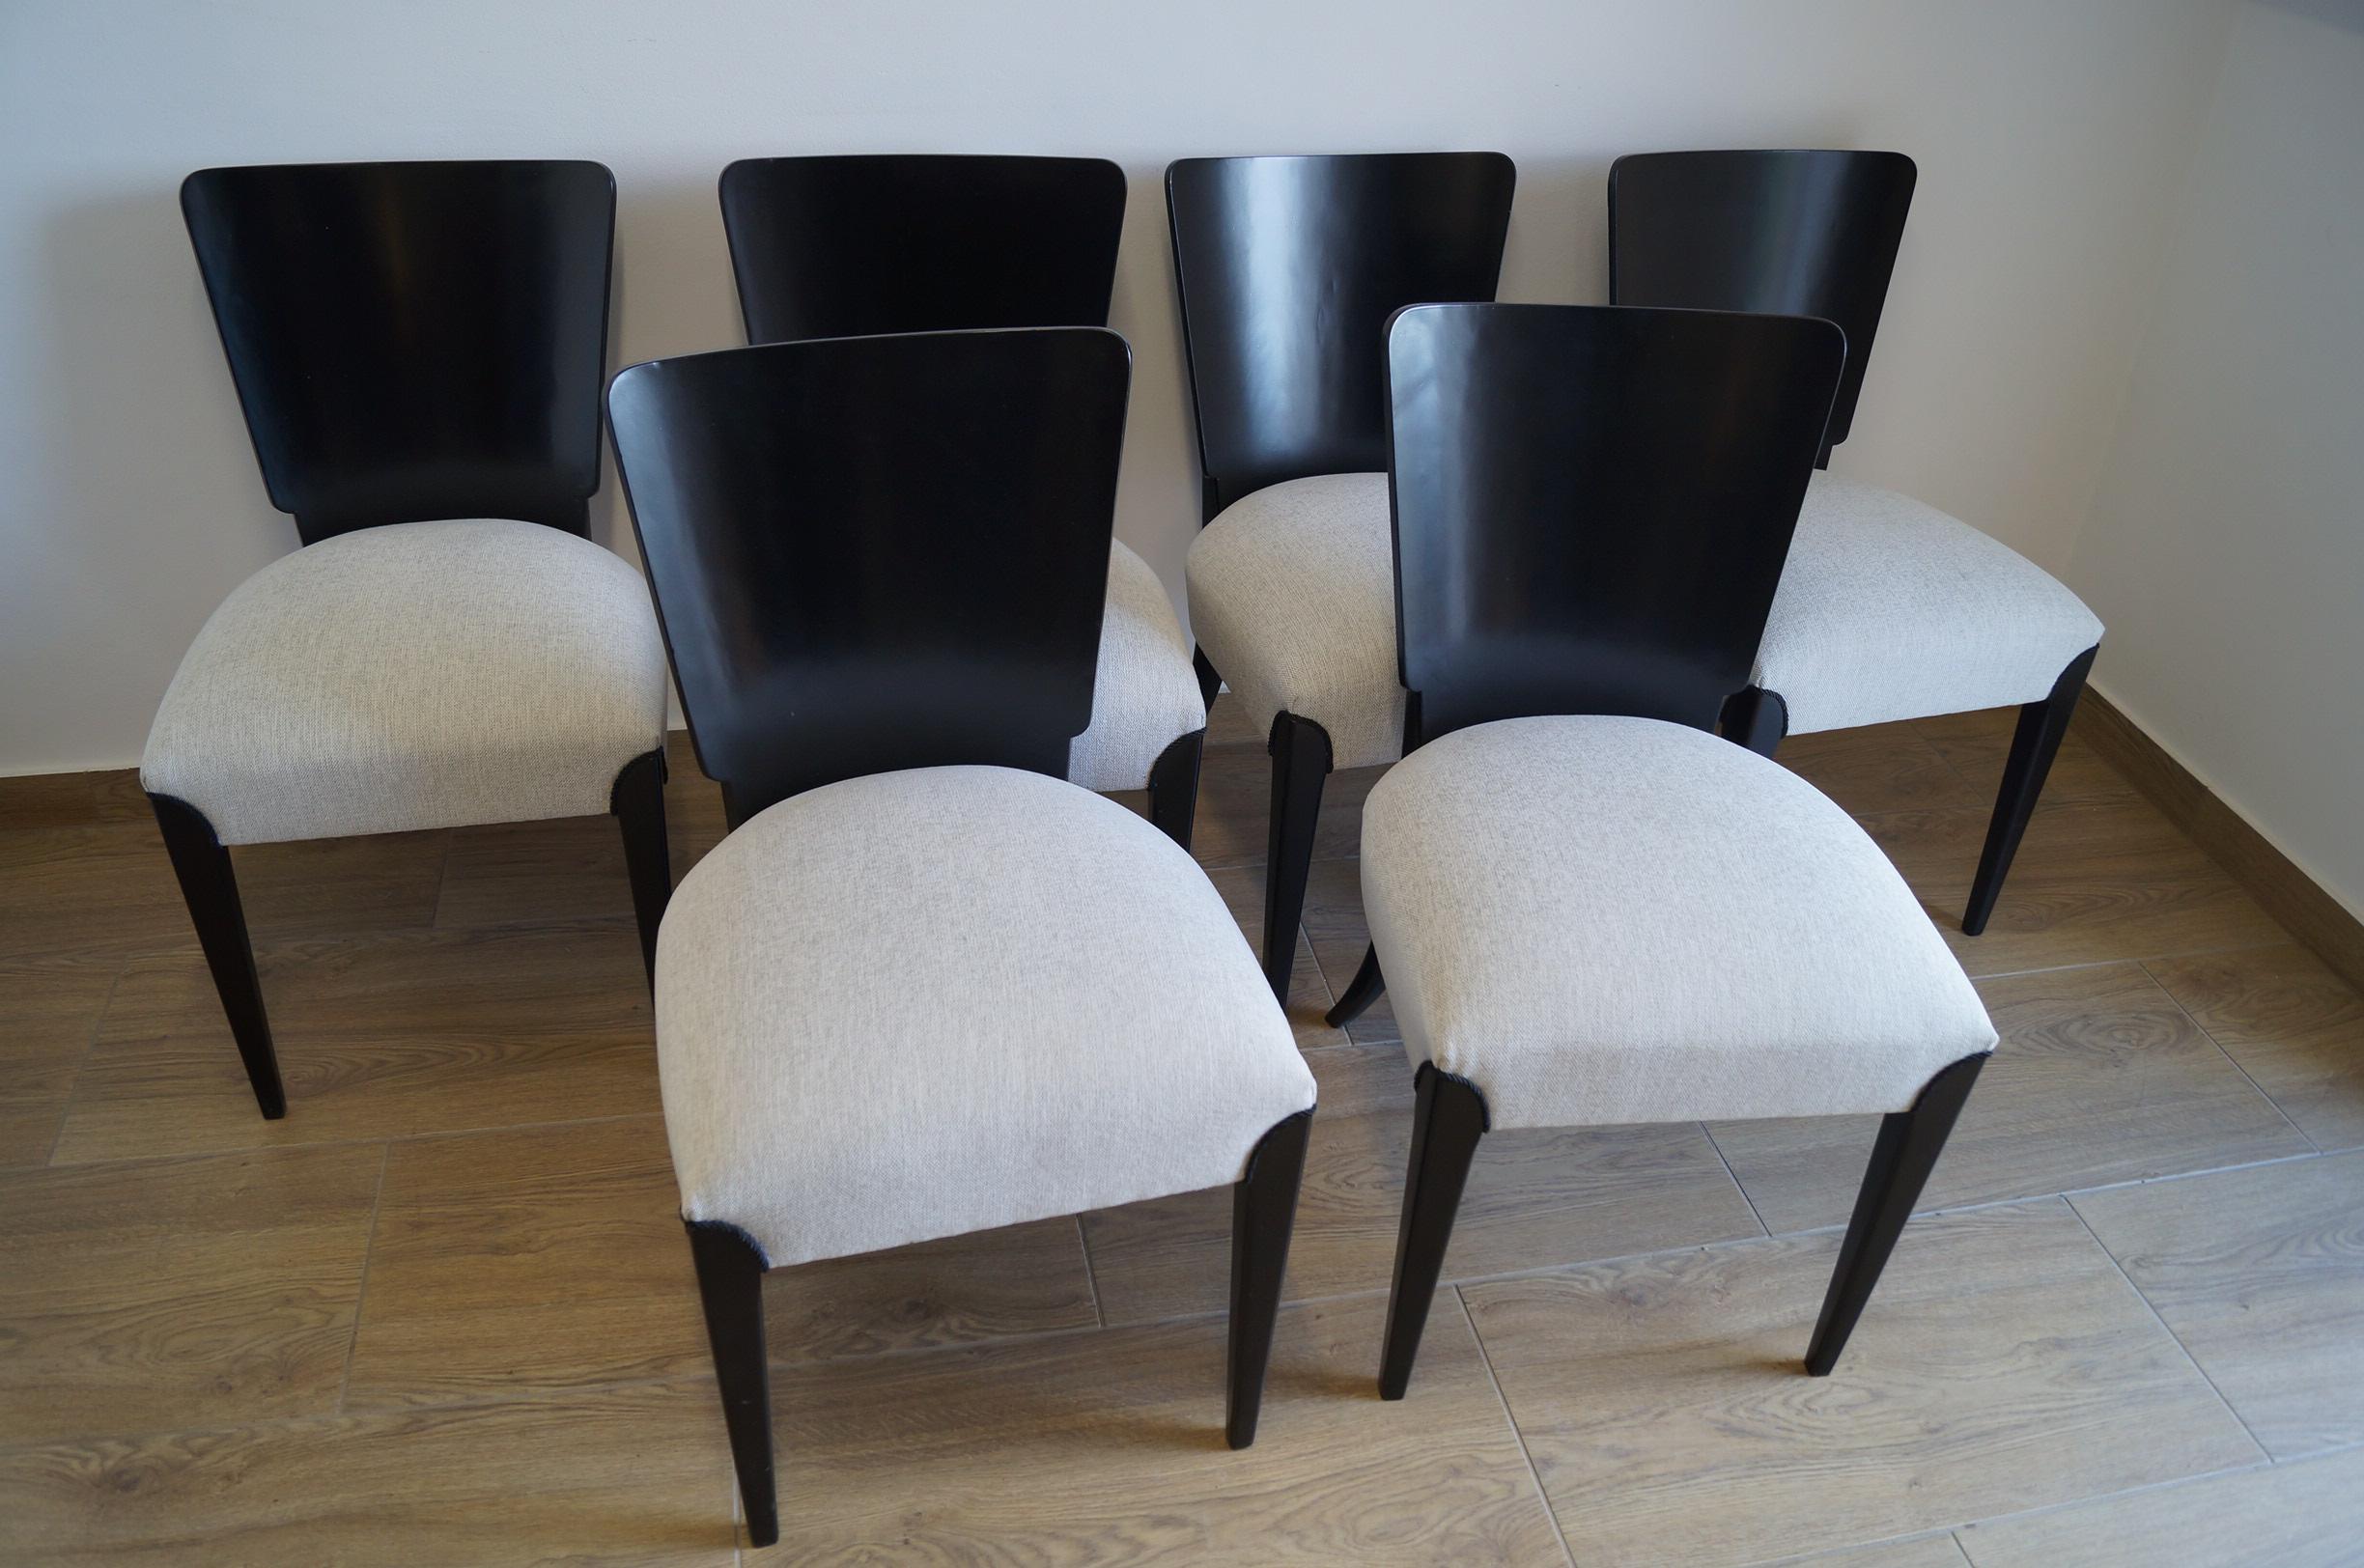 Art Déco quatre chaises de J.Halabala de 1950 nous présentons les chaises de J.Halabala des années 1950 (un designer tchèque classé parmi les créateurs les plus remarquables de la période moderne. L'apogée de sa carrière se situe dans les années